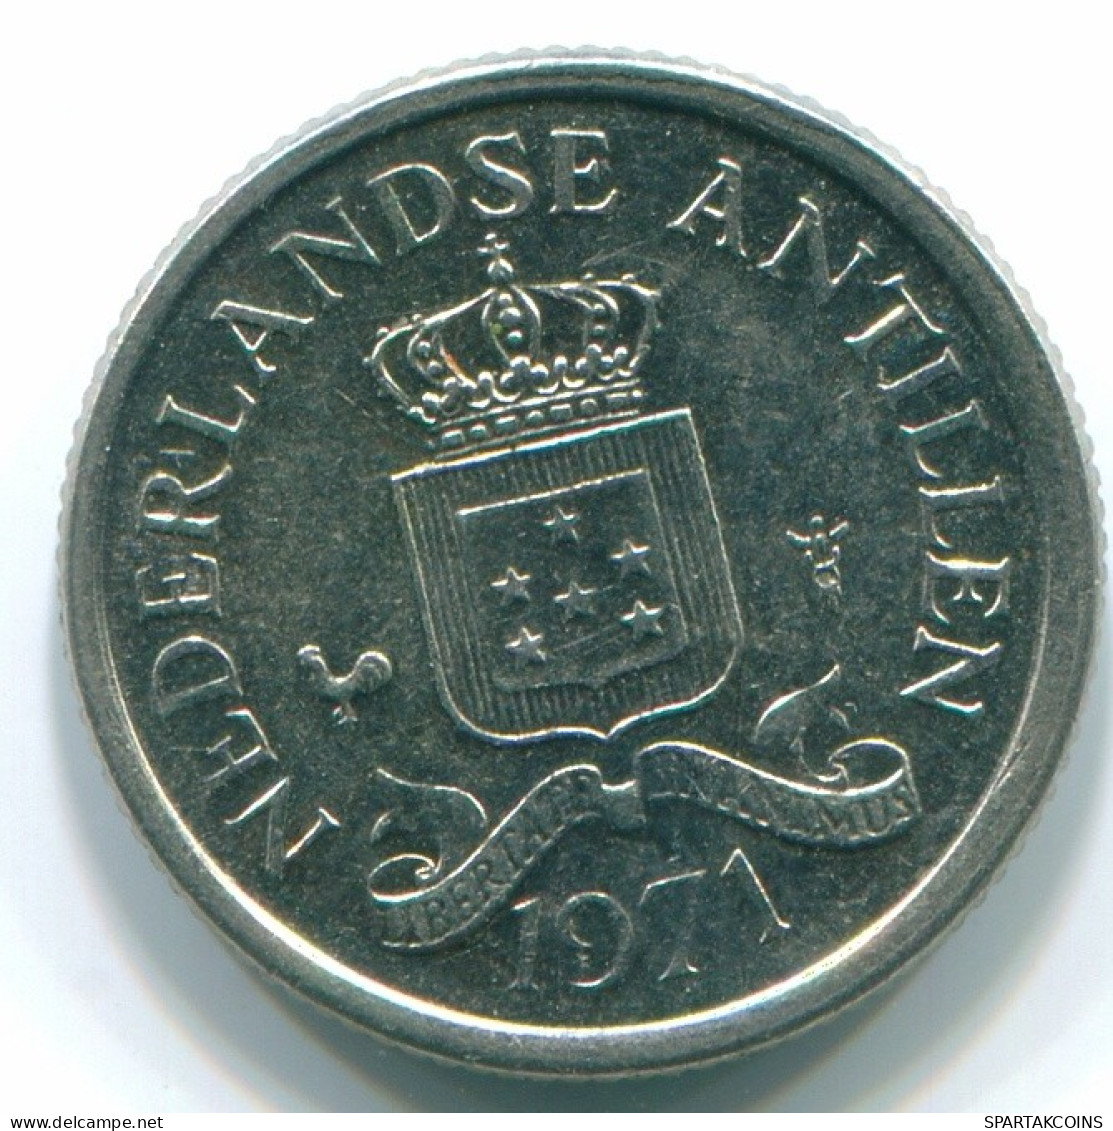 10 CENTS 1971 NETHERLANDS ANTILLES Nickel Colonial Coin #S13411.U.A - Antillas Neerlandesas